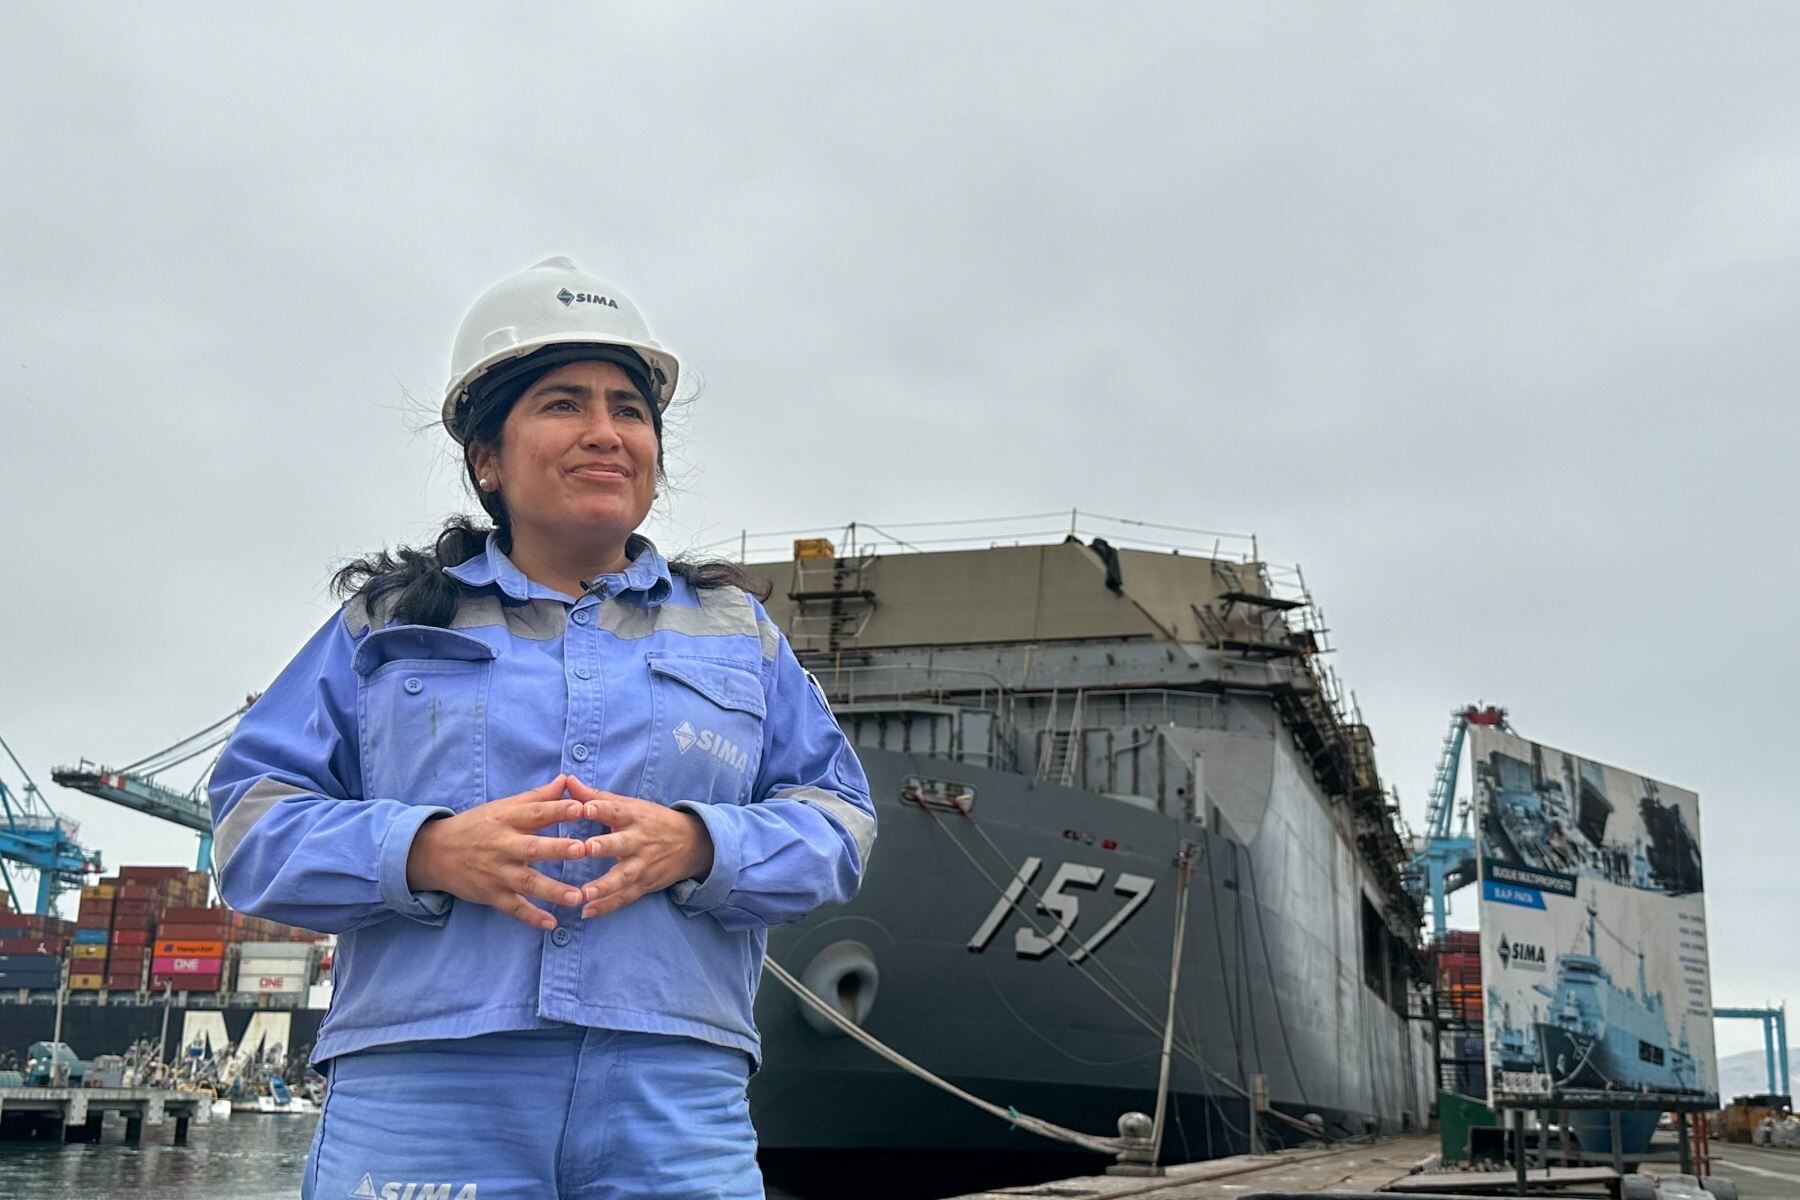 La colaboración con entidades como la Marina de Guerra del Perú y SIMA-Perú asegura la calidad y relevancia de la formación en Ingeniería de Construcción de Barcos. (Andina)